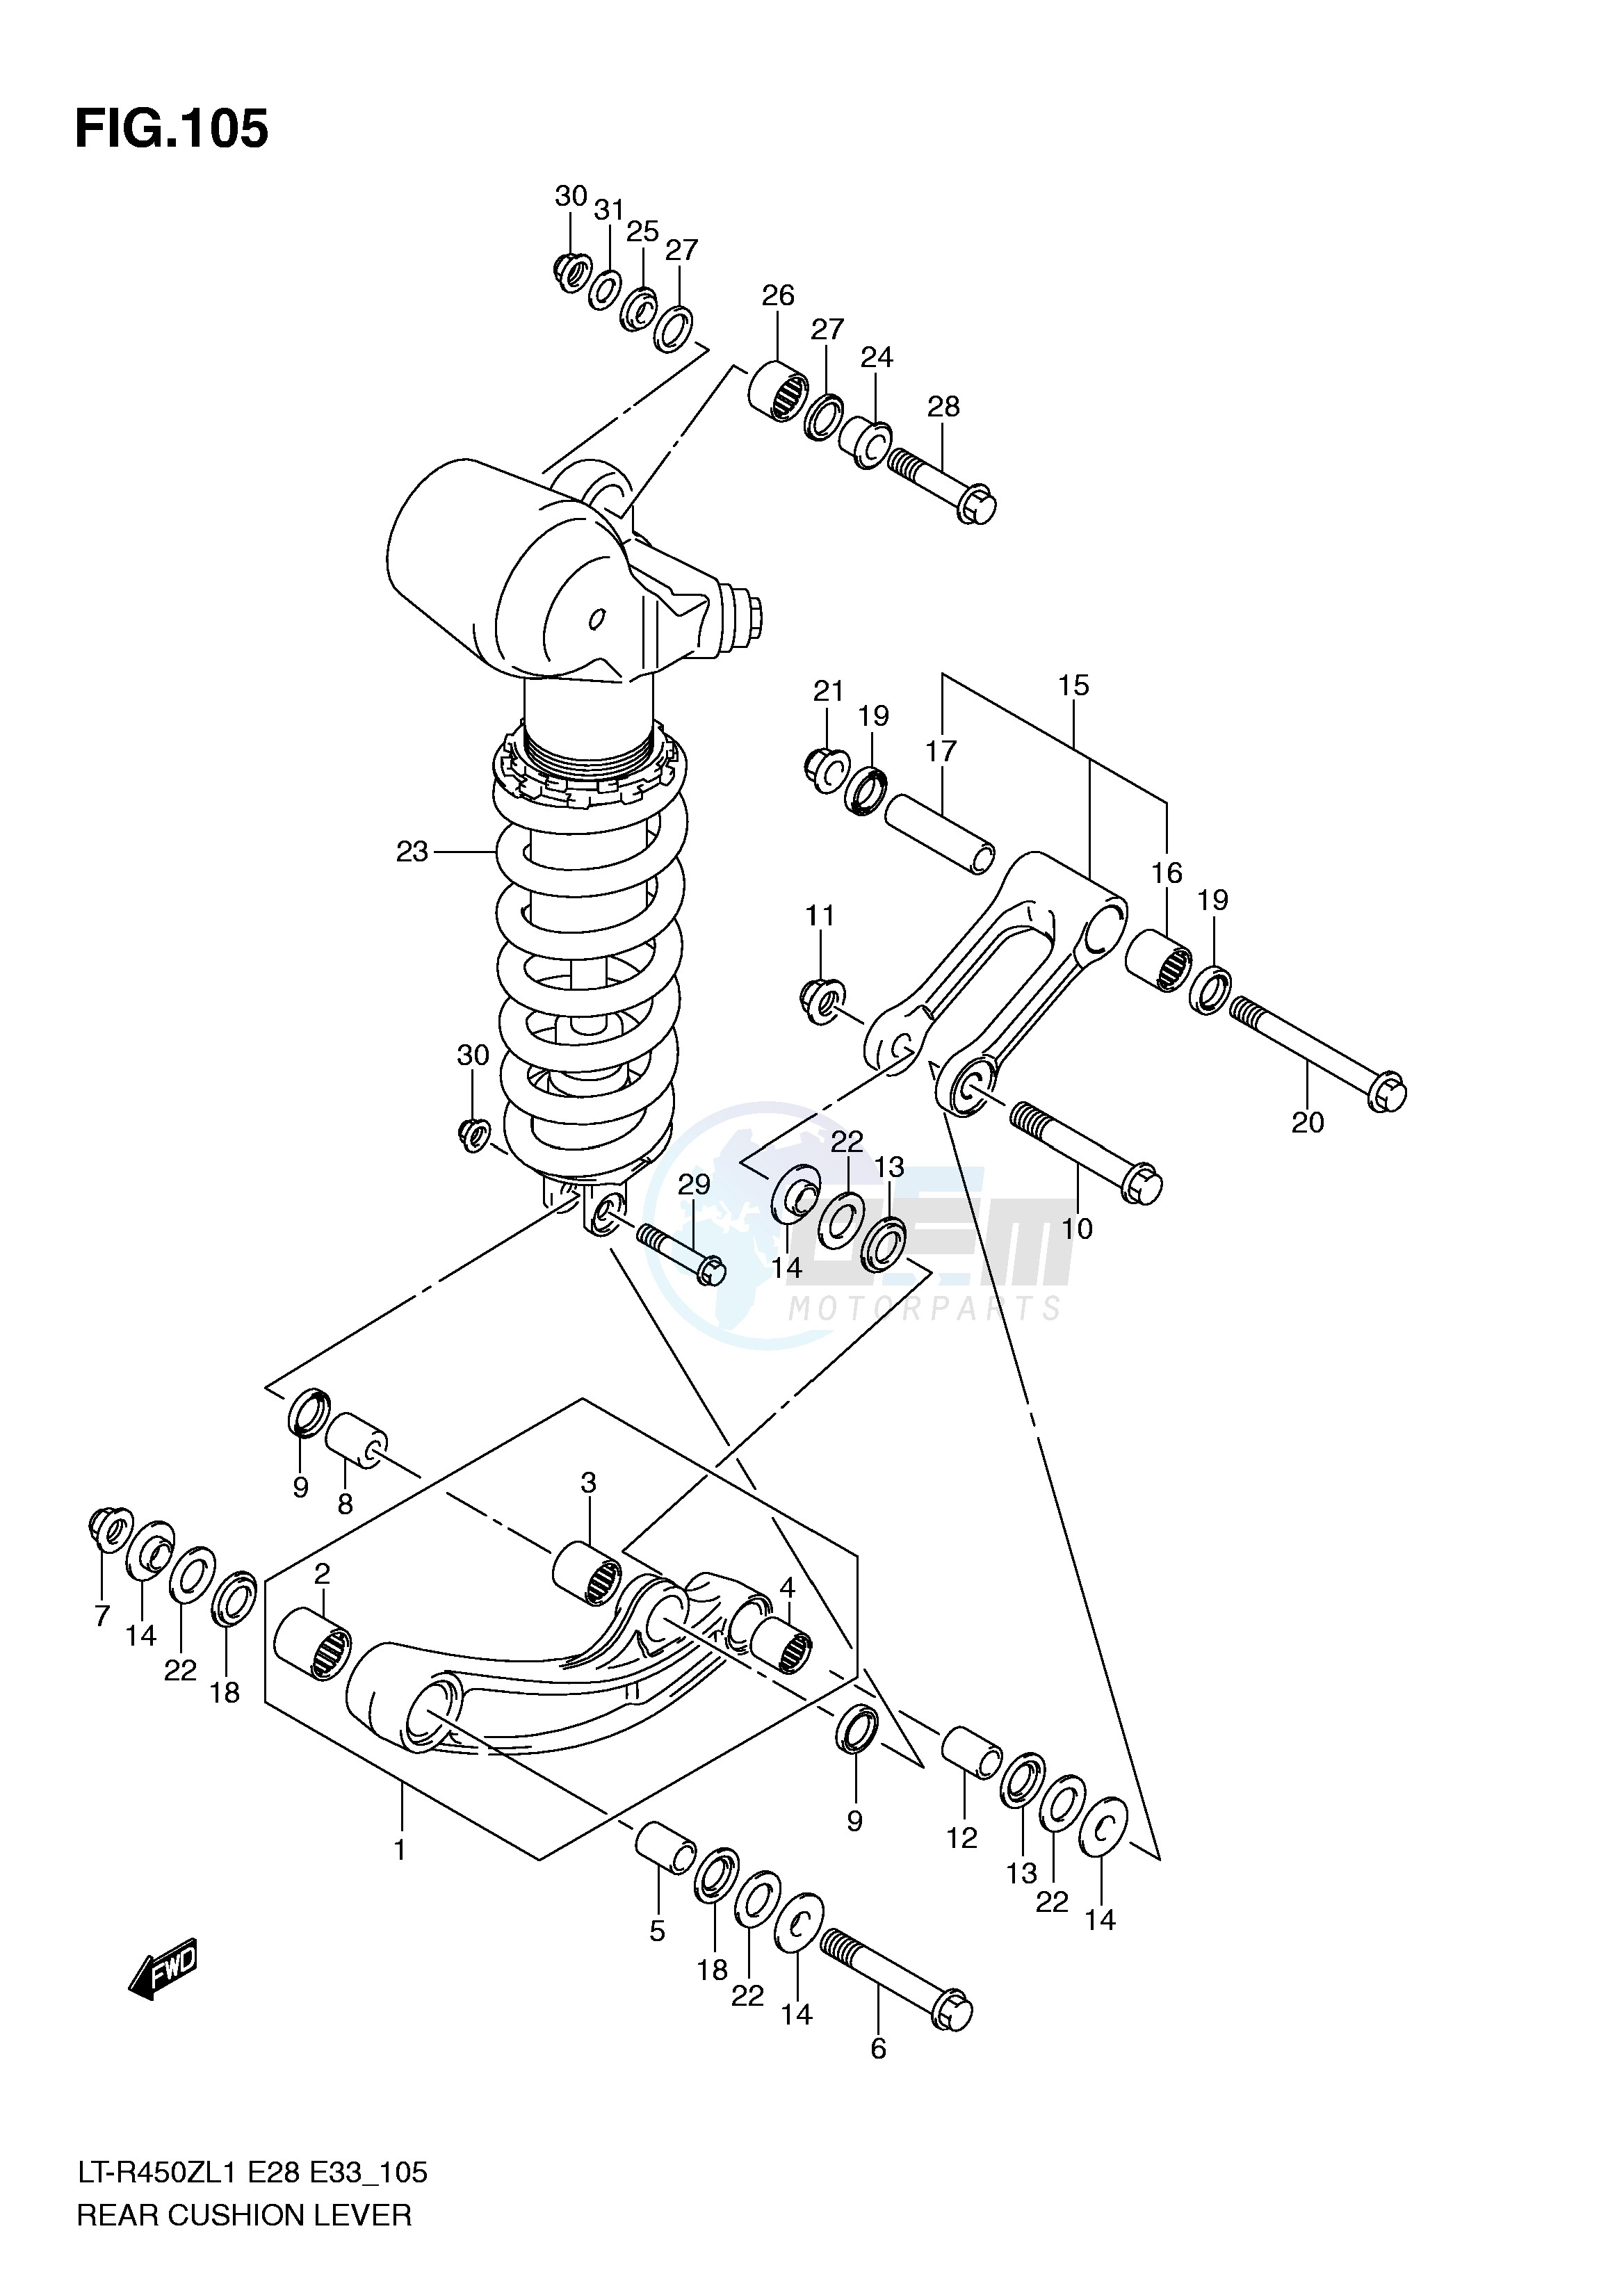 REAR CUSHION LEVER (LT-R450L1 E28) blueprint